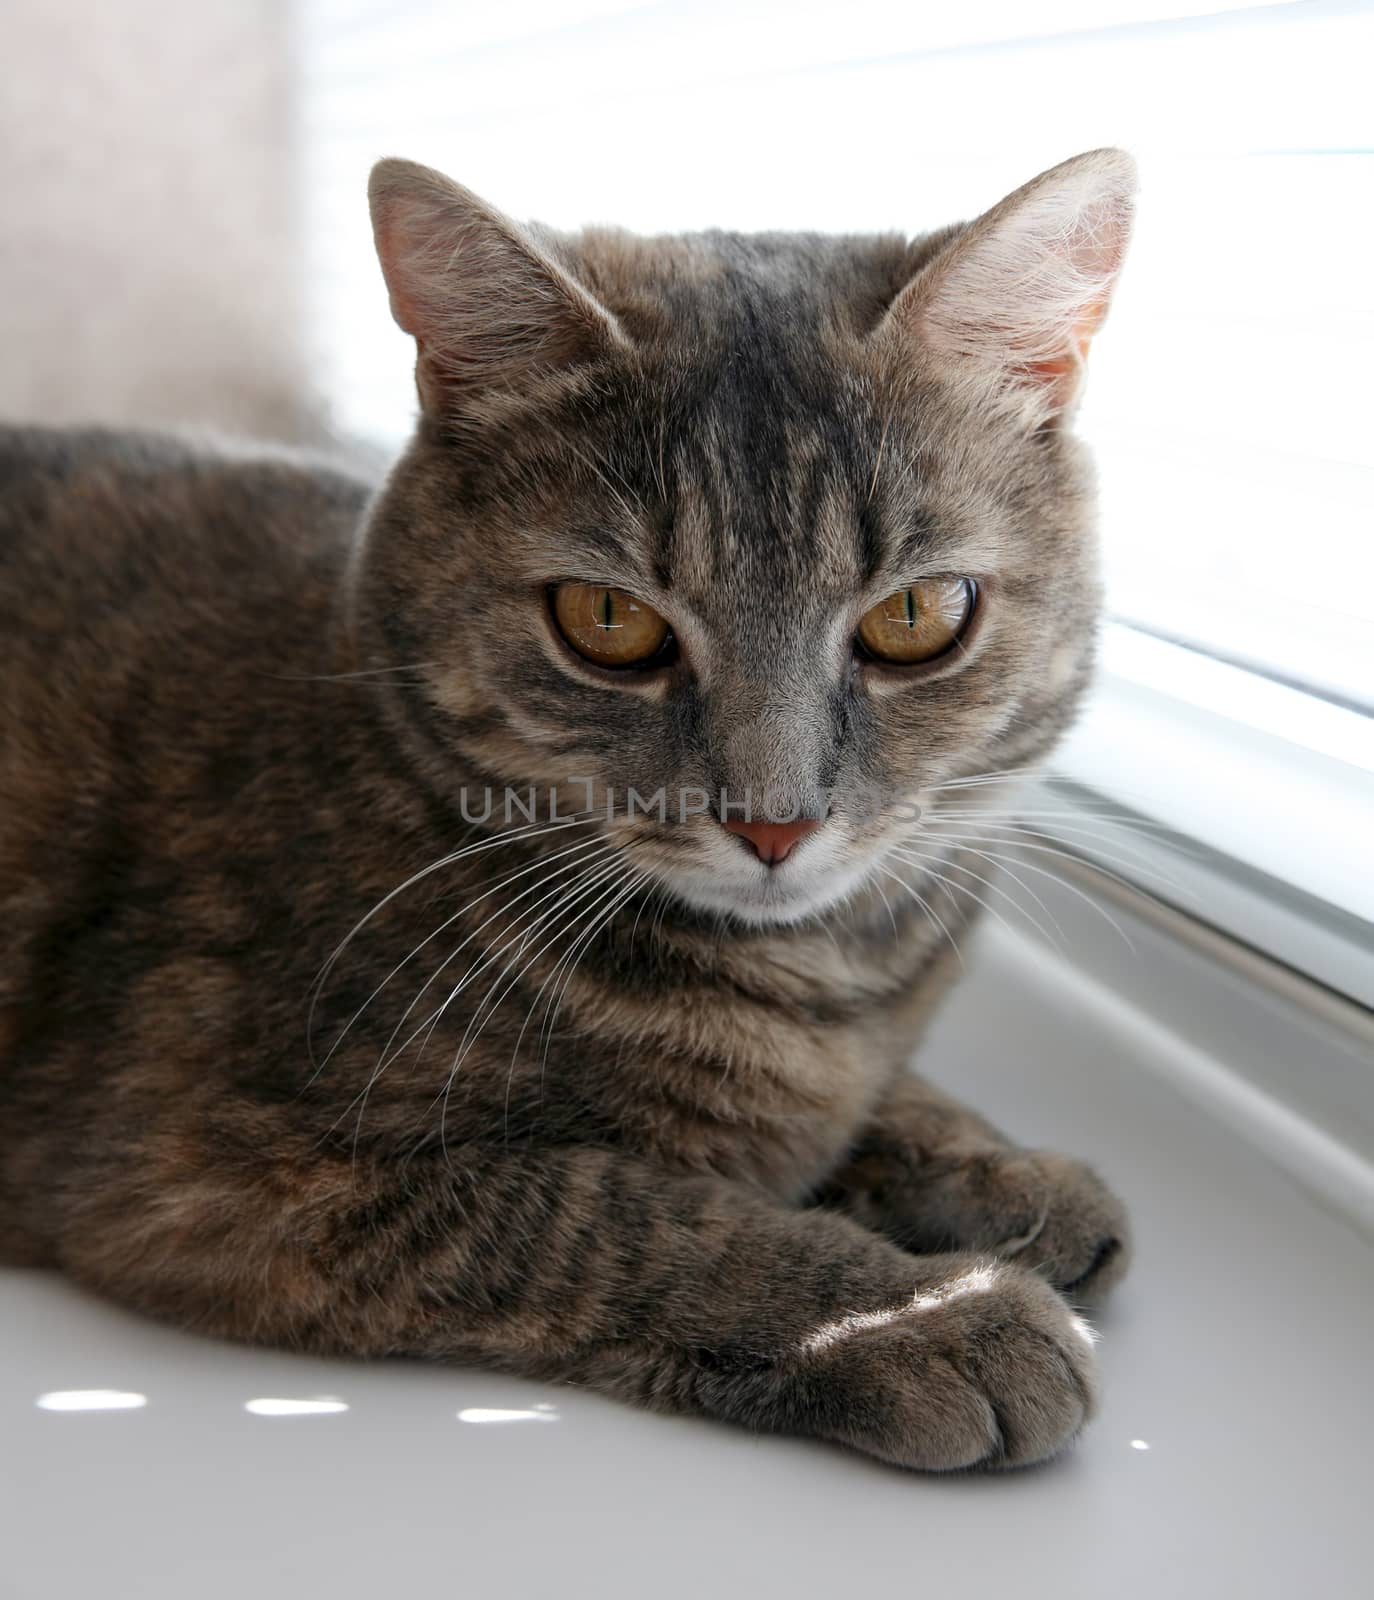 Portrait of a pet - British gray cat closeup